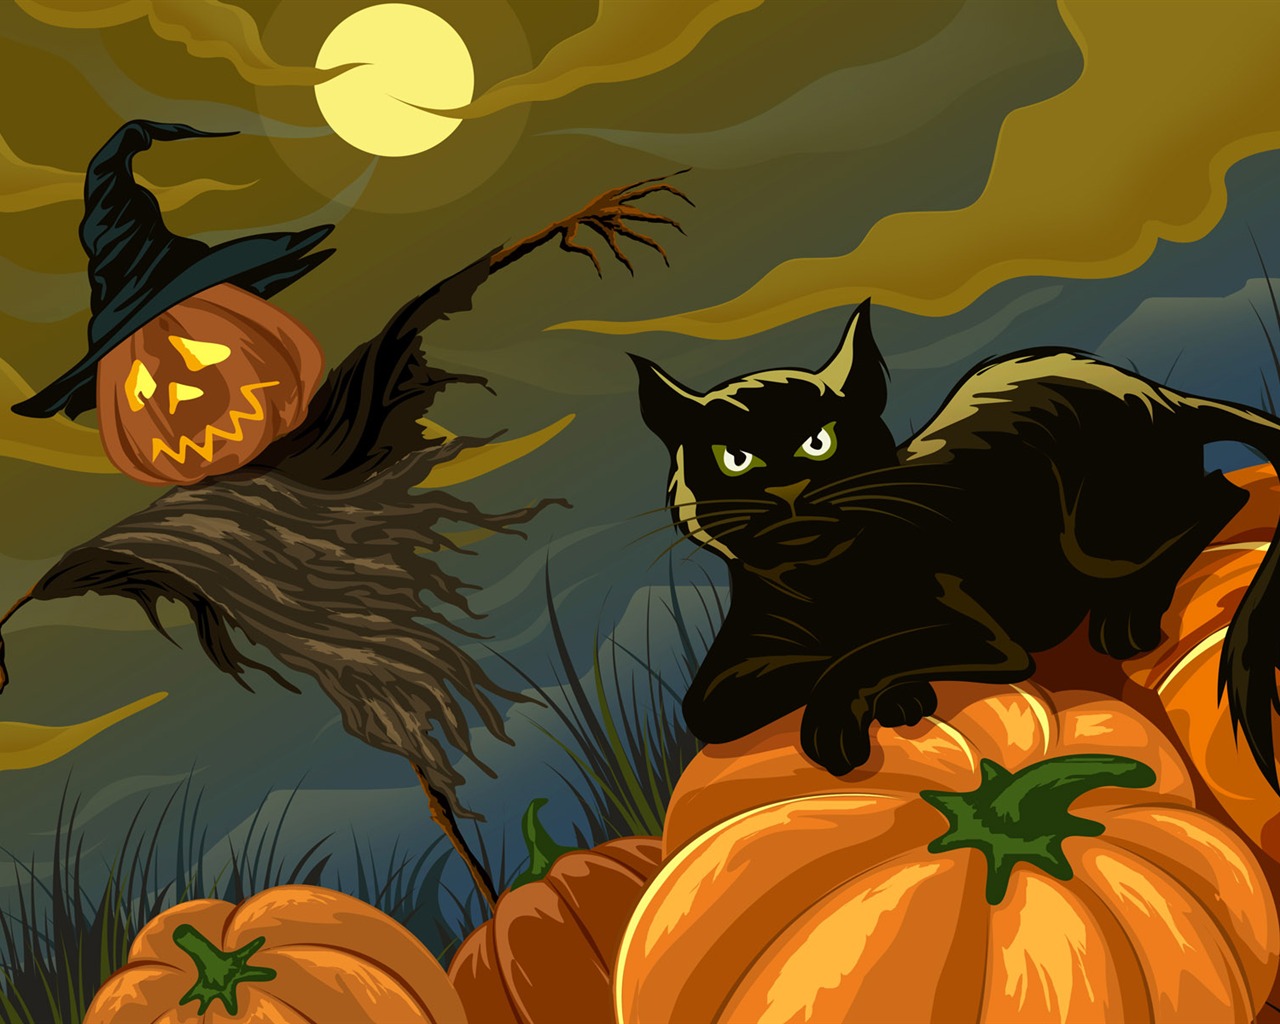 Fondos de Halloween temáticos (4) #15 - 1280x1024